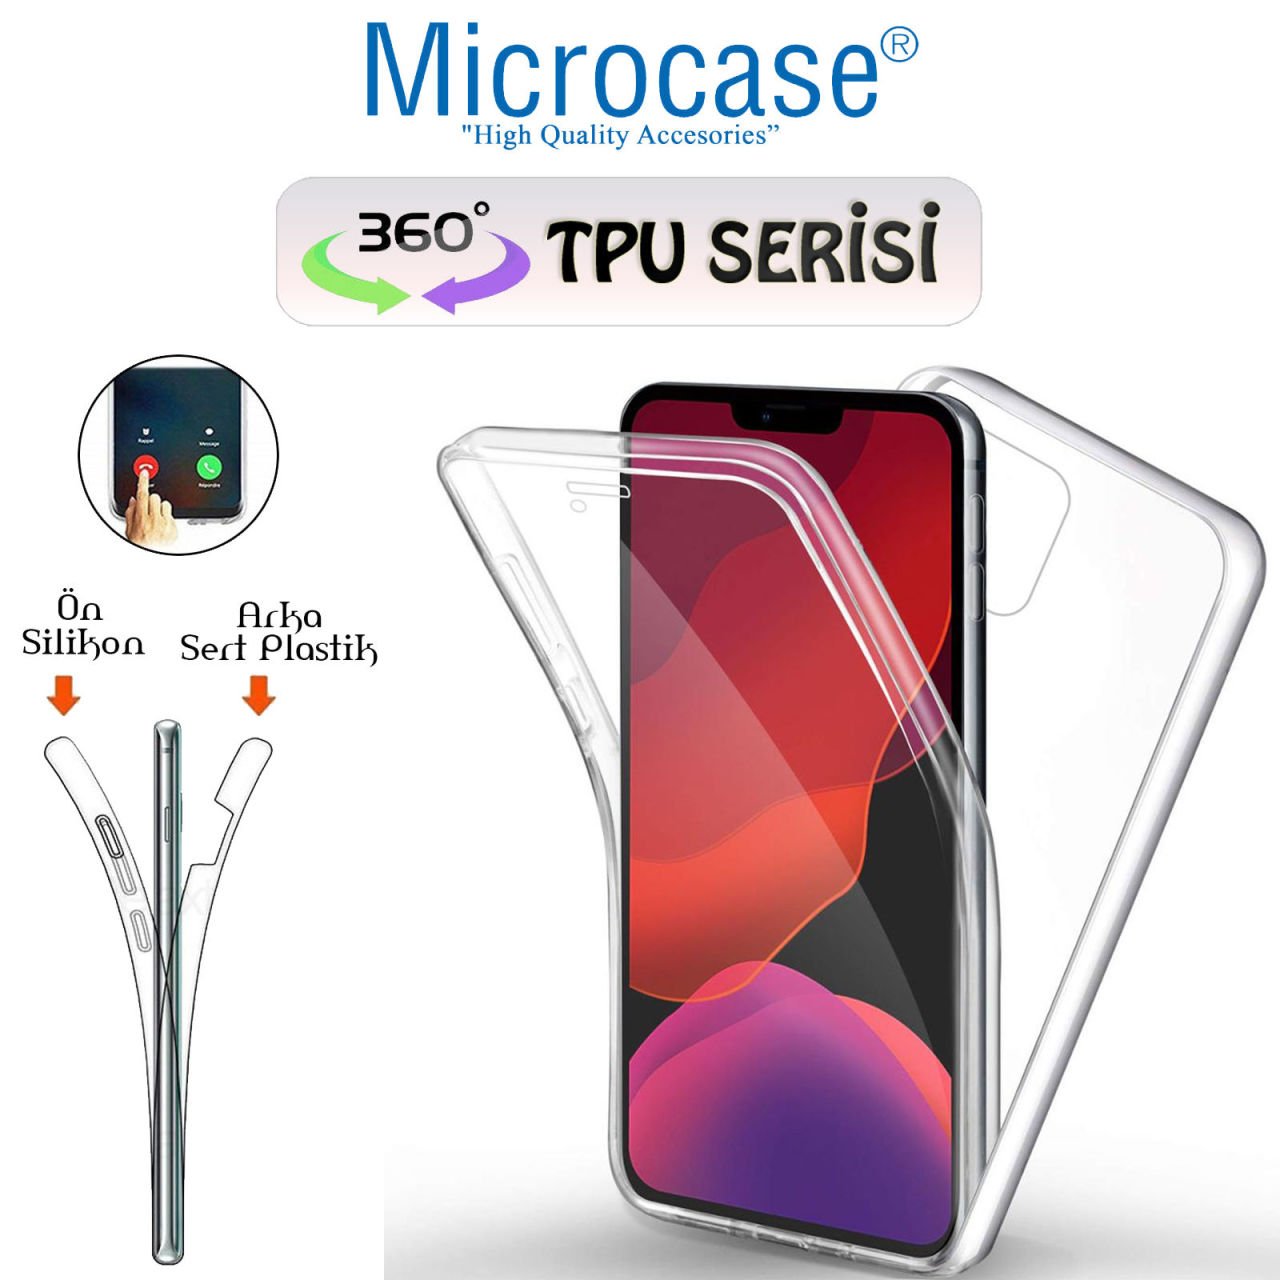 Microcase iPhone 12 Pro Max 360 Tpu Serisi Ön Arka Full Cover Şeffaf Kılıf